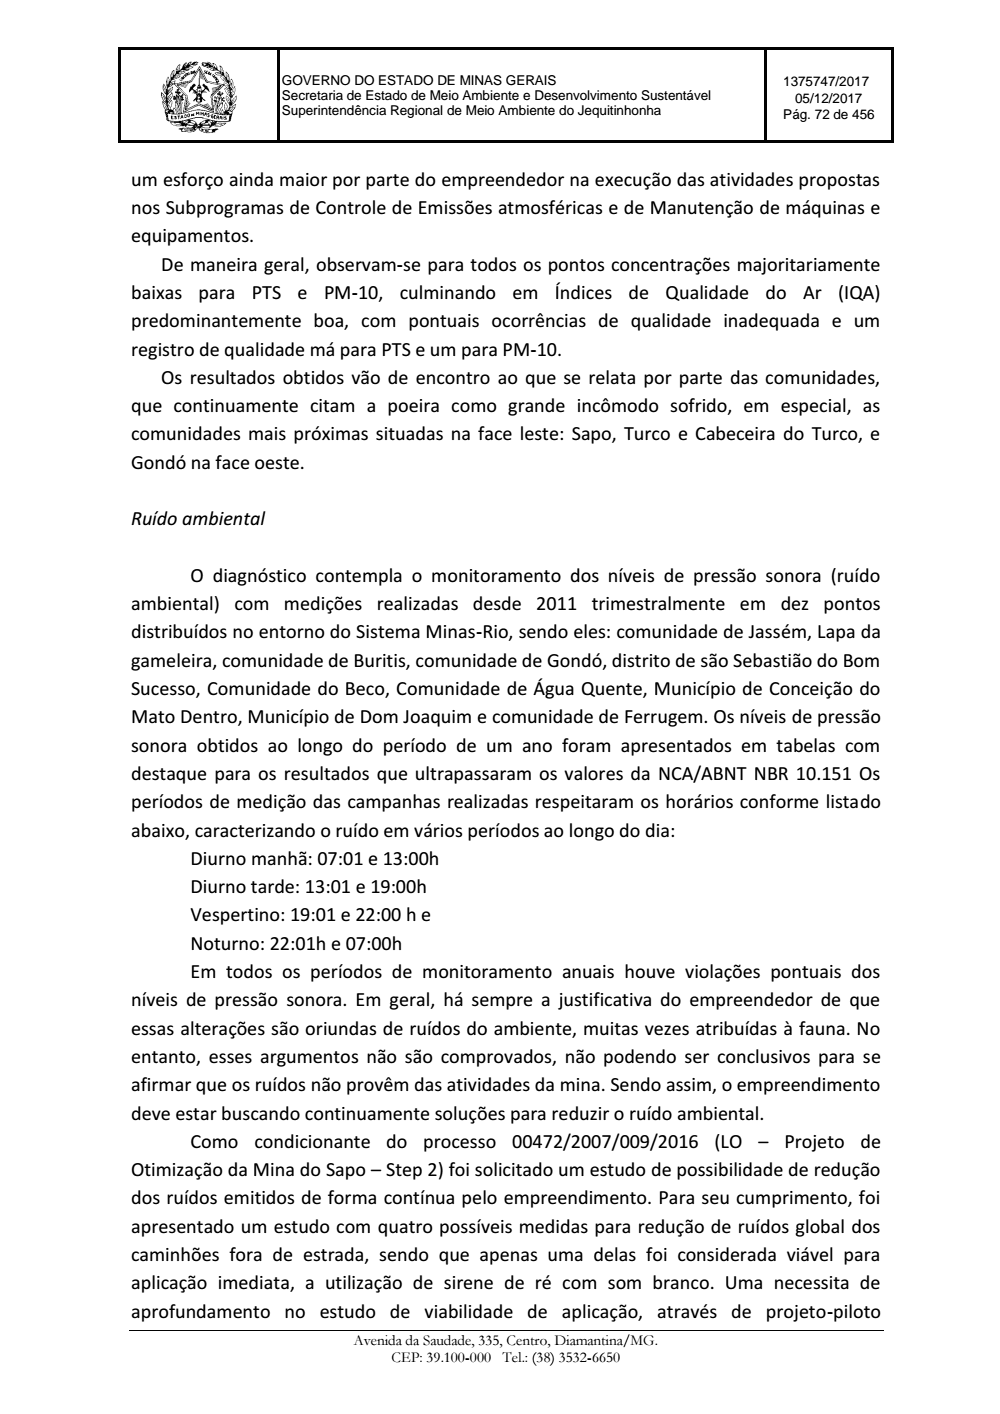 Page 72 from Parecer único da Secretaria de estado de Meio Ambiente e Desenvolvimento Sustentável (SEMAD)